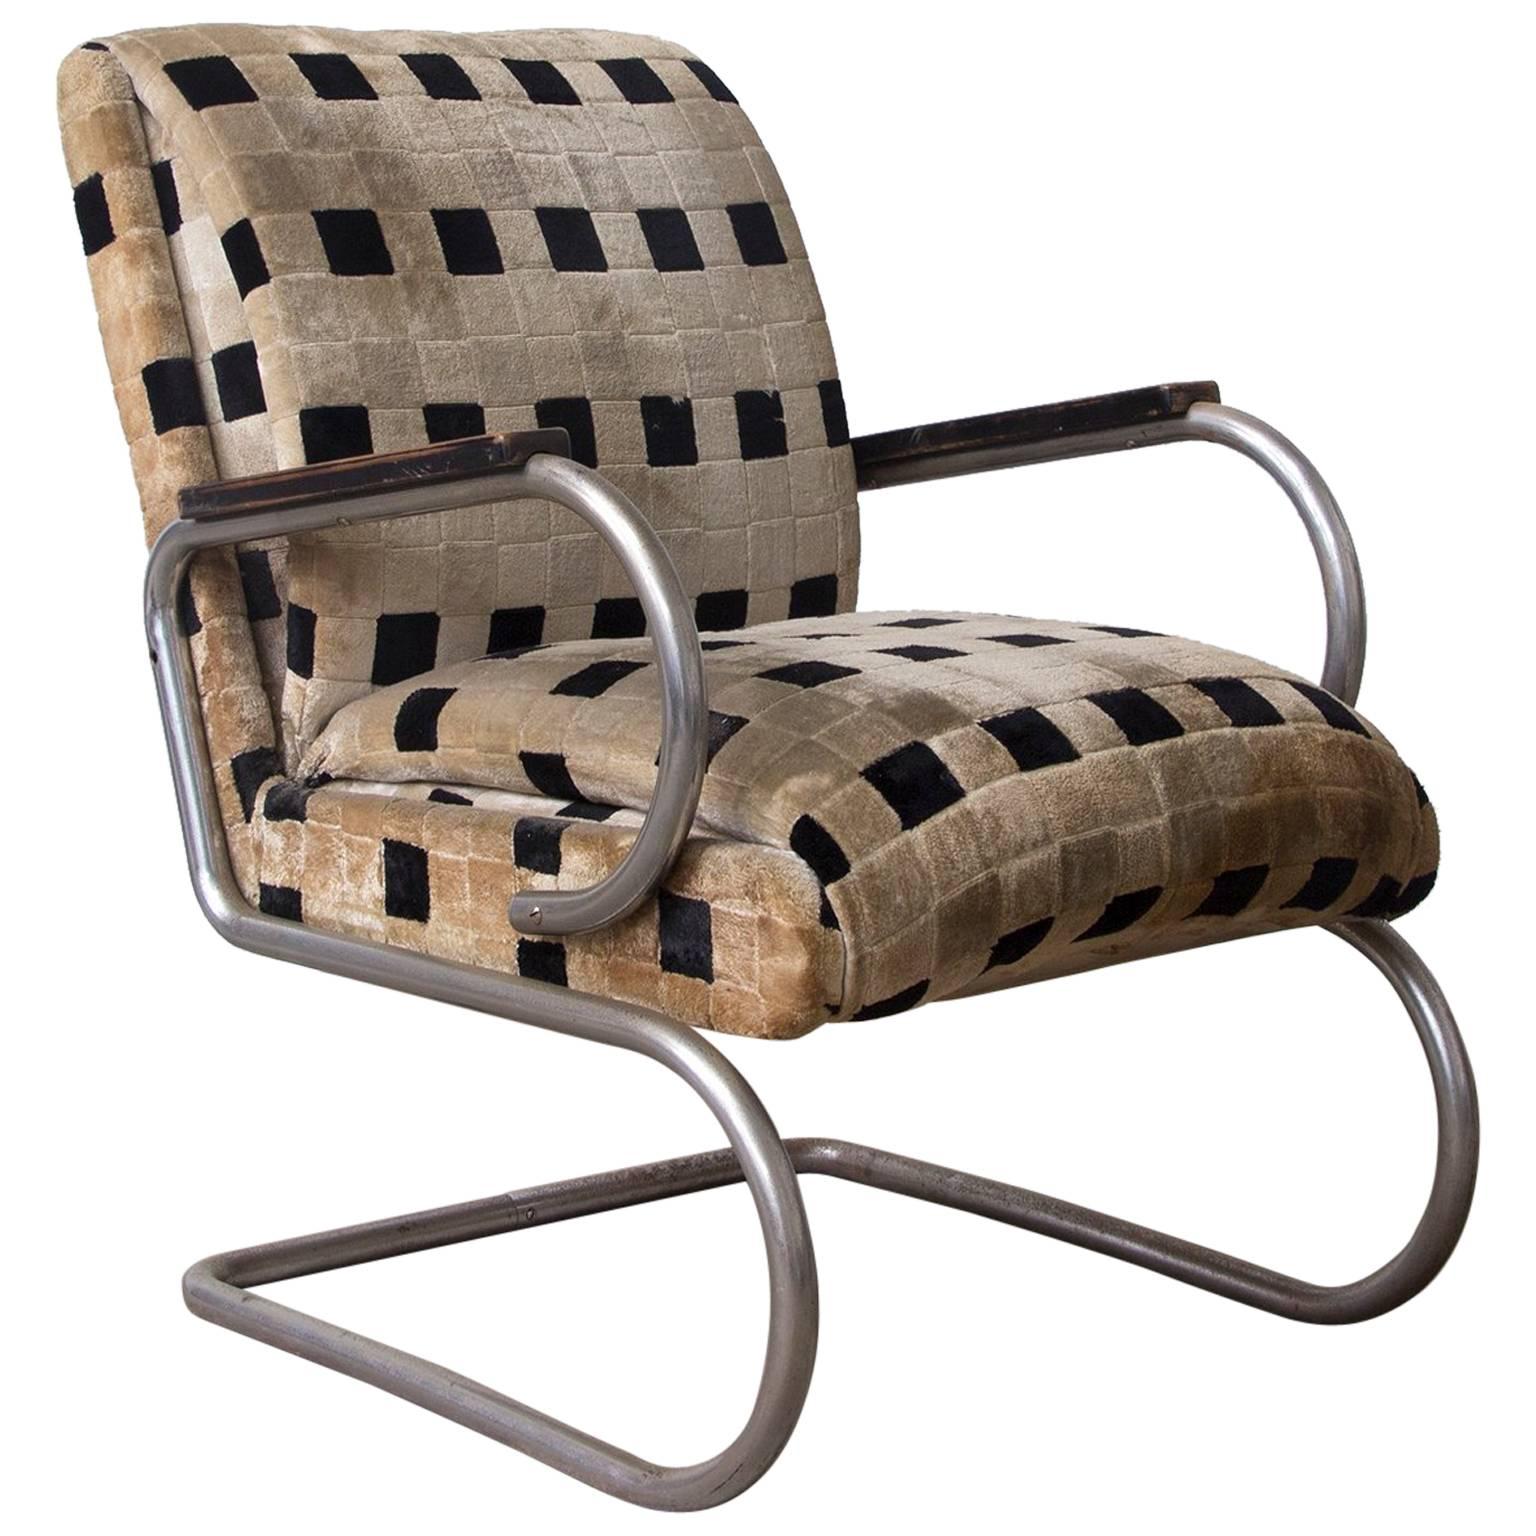 Original French Art Deco Lounge Chair and Original Soft Comfy Fabric, circa 1935